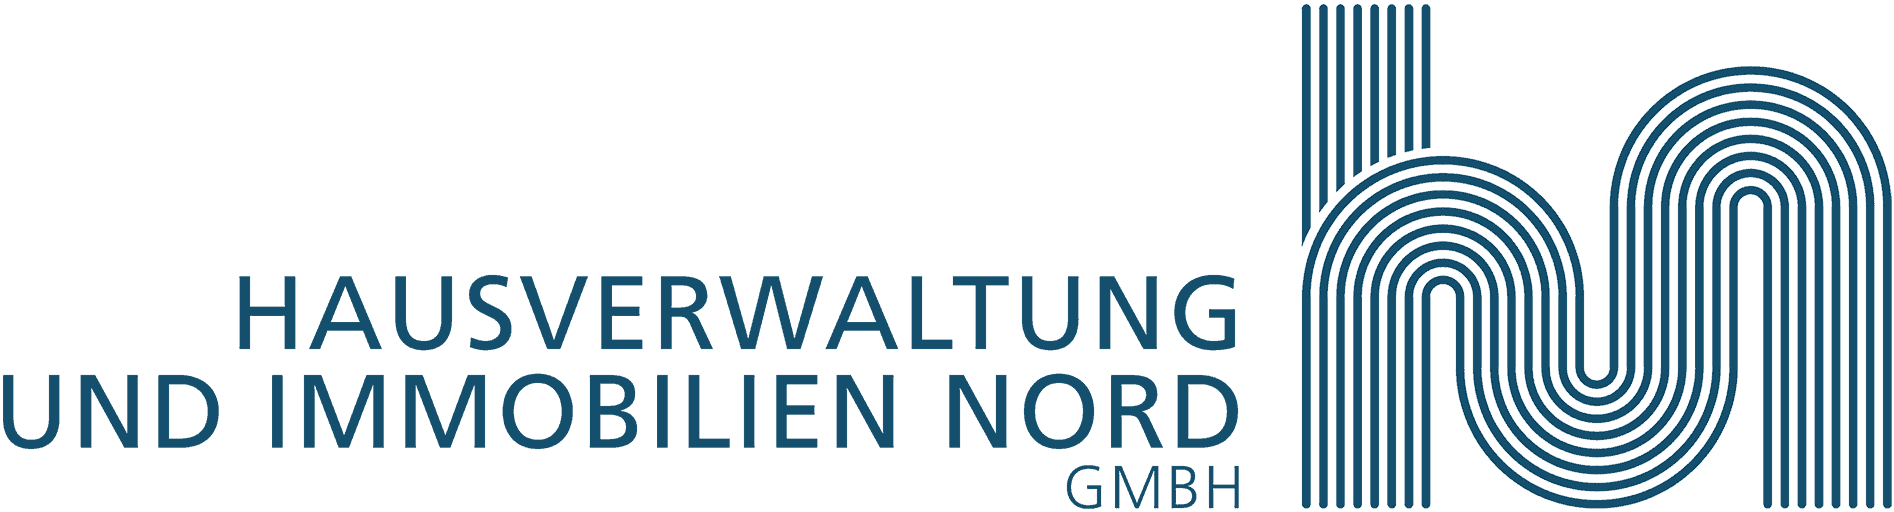 Hausverwaltung und Immobilien NORD GmbH